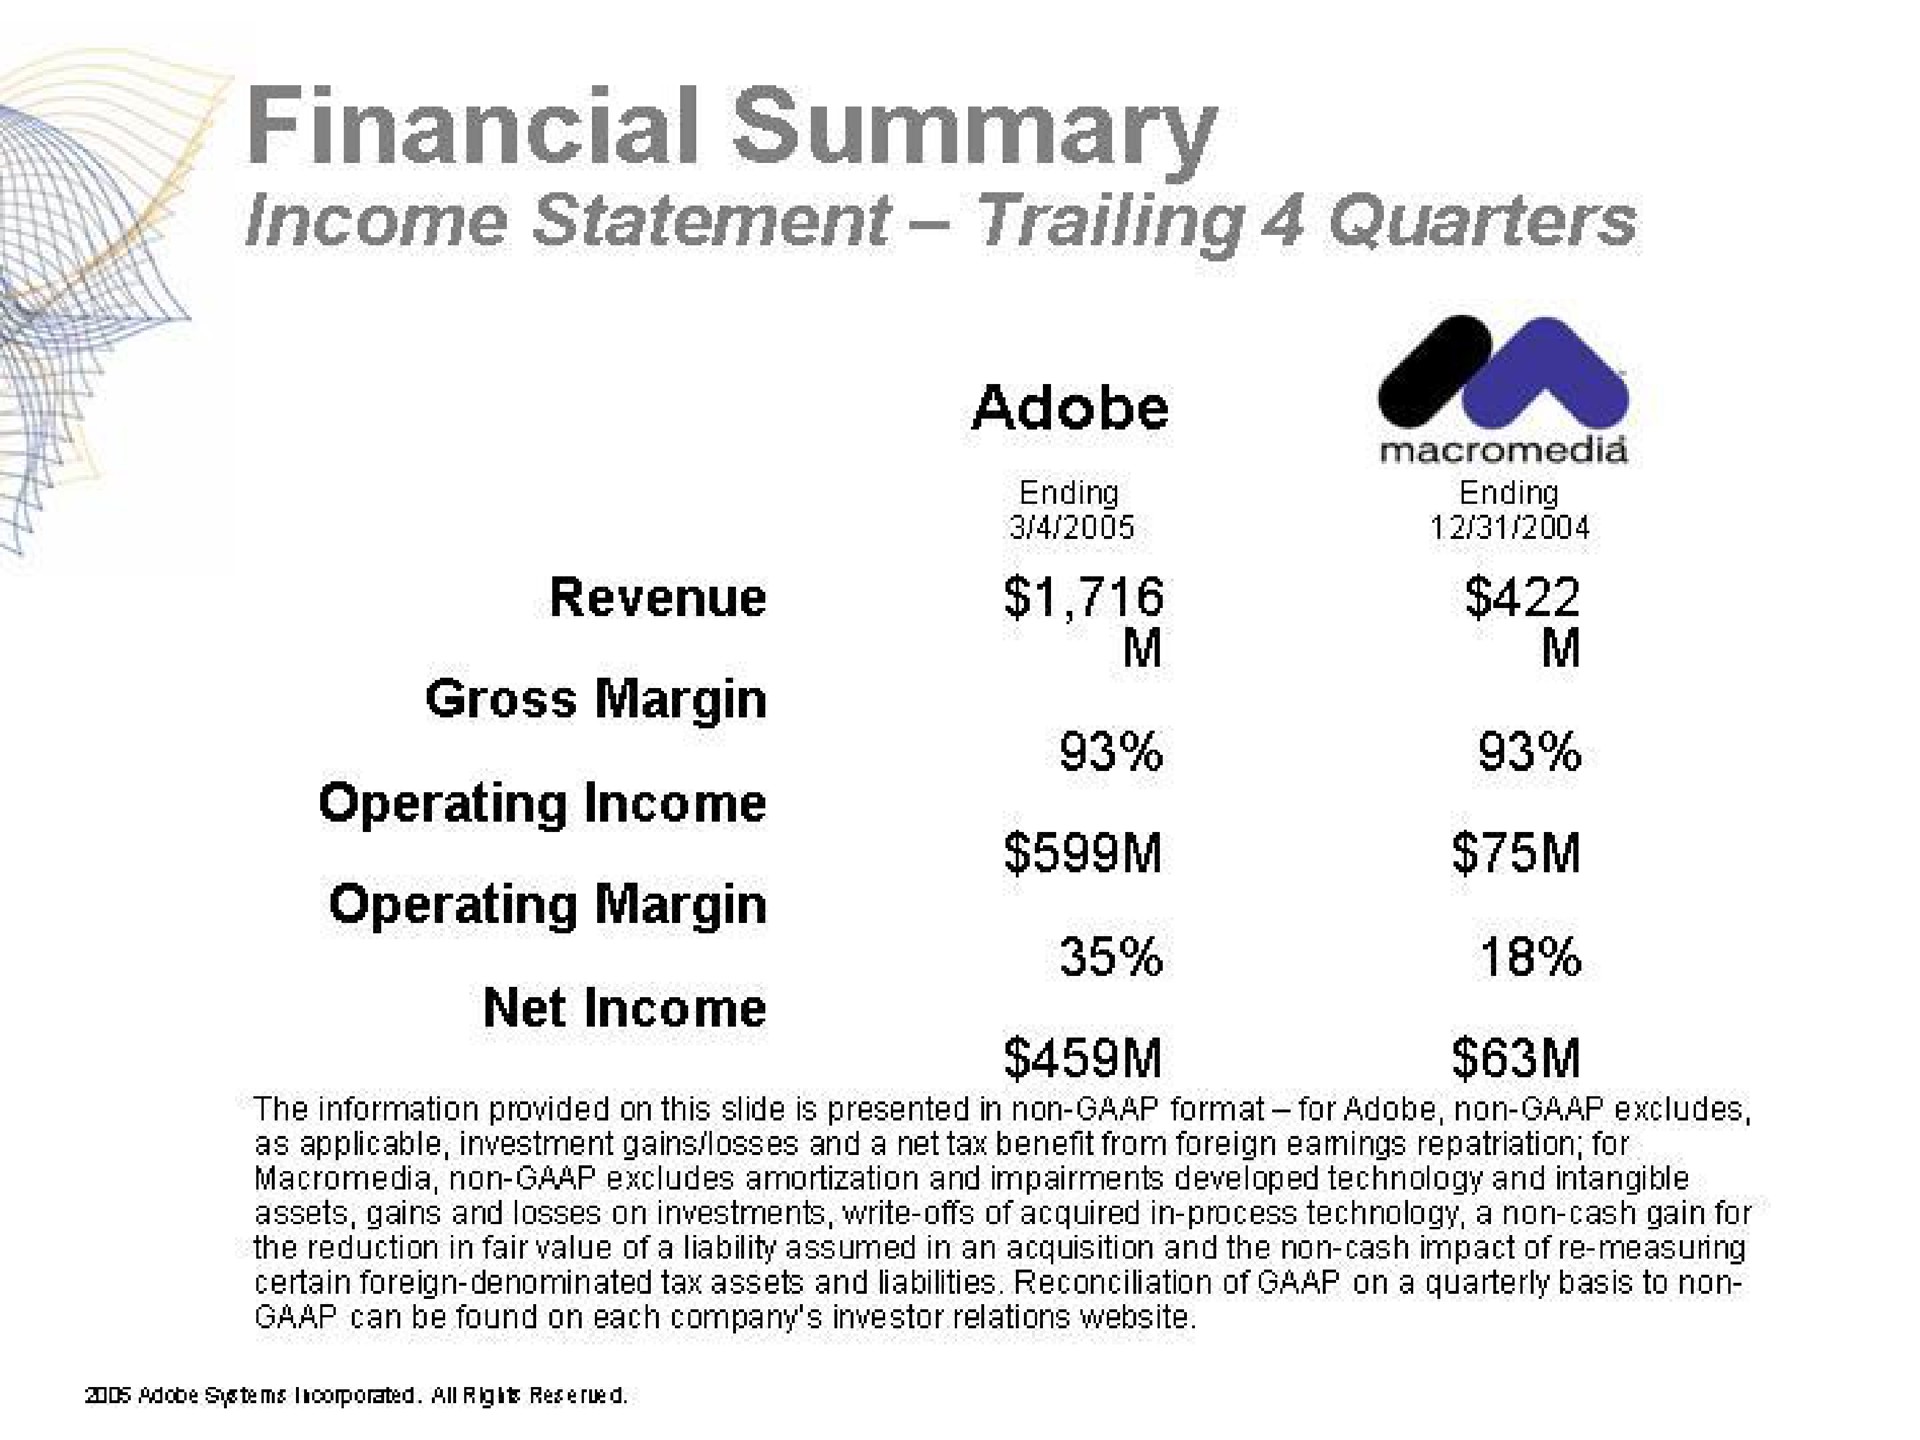 financial summary | Adobe